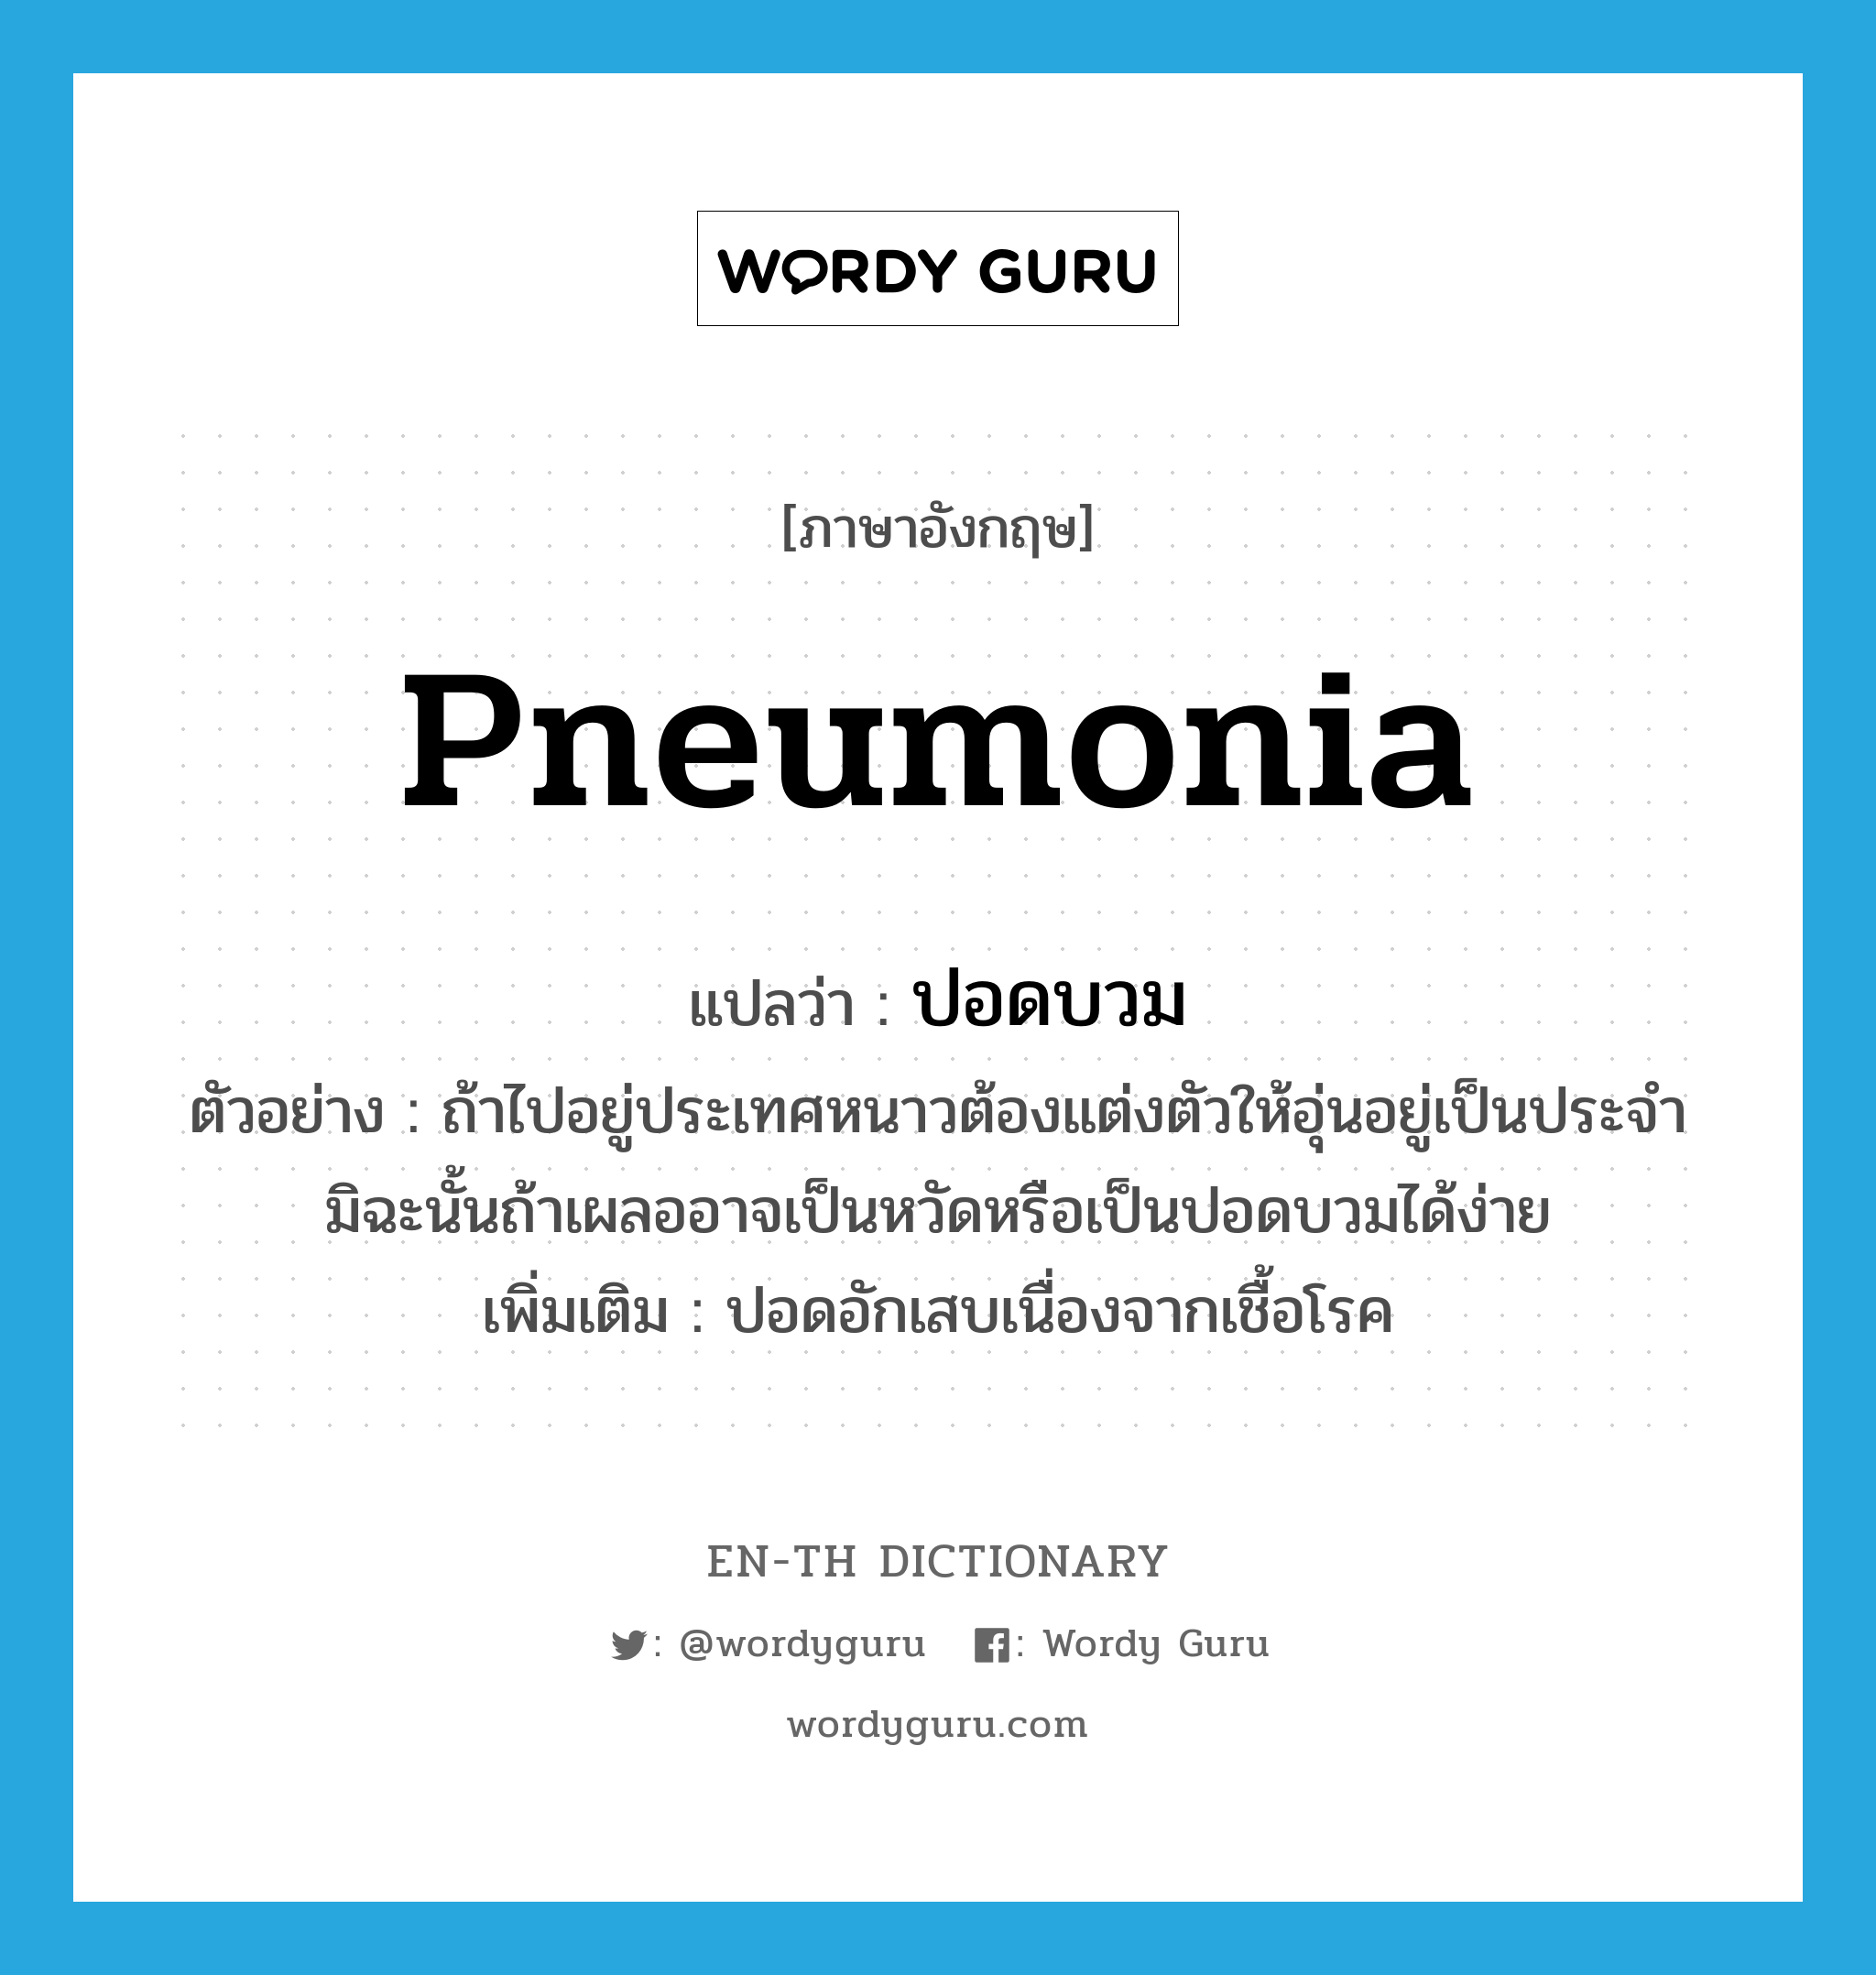 pneumonia แปลว่า?, คำศัพท์ภาษาอังกฤษ pneumonia แปลว่า ปอดบวม ประเภท N ตัวอย่าง ถ้าไปอยู่ประเทศหนาวต้องแต่งตัวให้อุ่นอยู่เป็นประจำ มิฉะนั้นถ้าเผลออาจเป็นหวัดหรือเป็นปอดบวมได้ง่าย เพิ่มเติม ปอดอักเสบเนื่องจากเชื้อโรค หมวด N